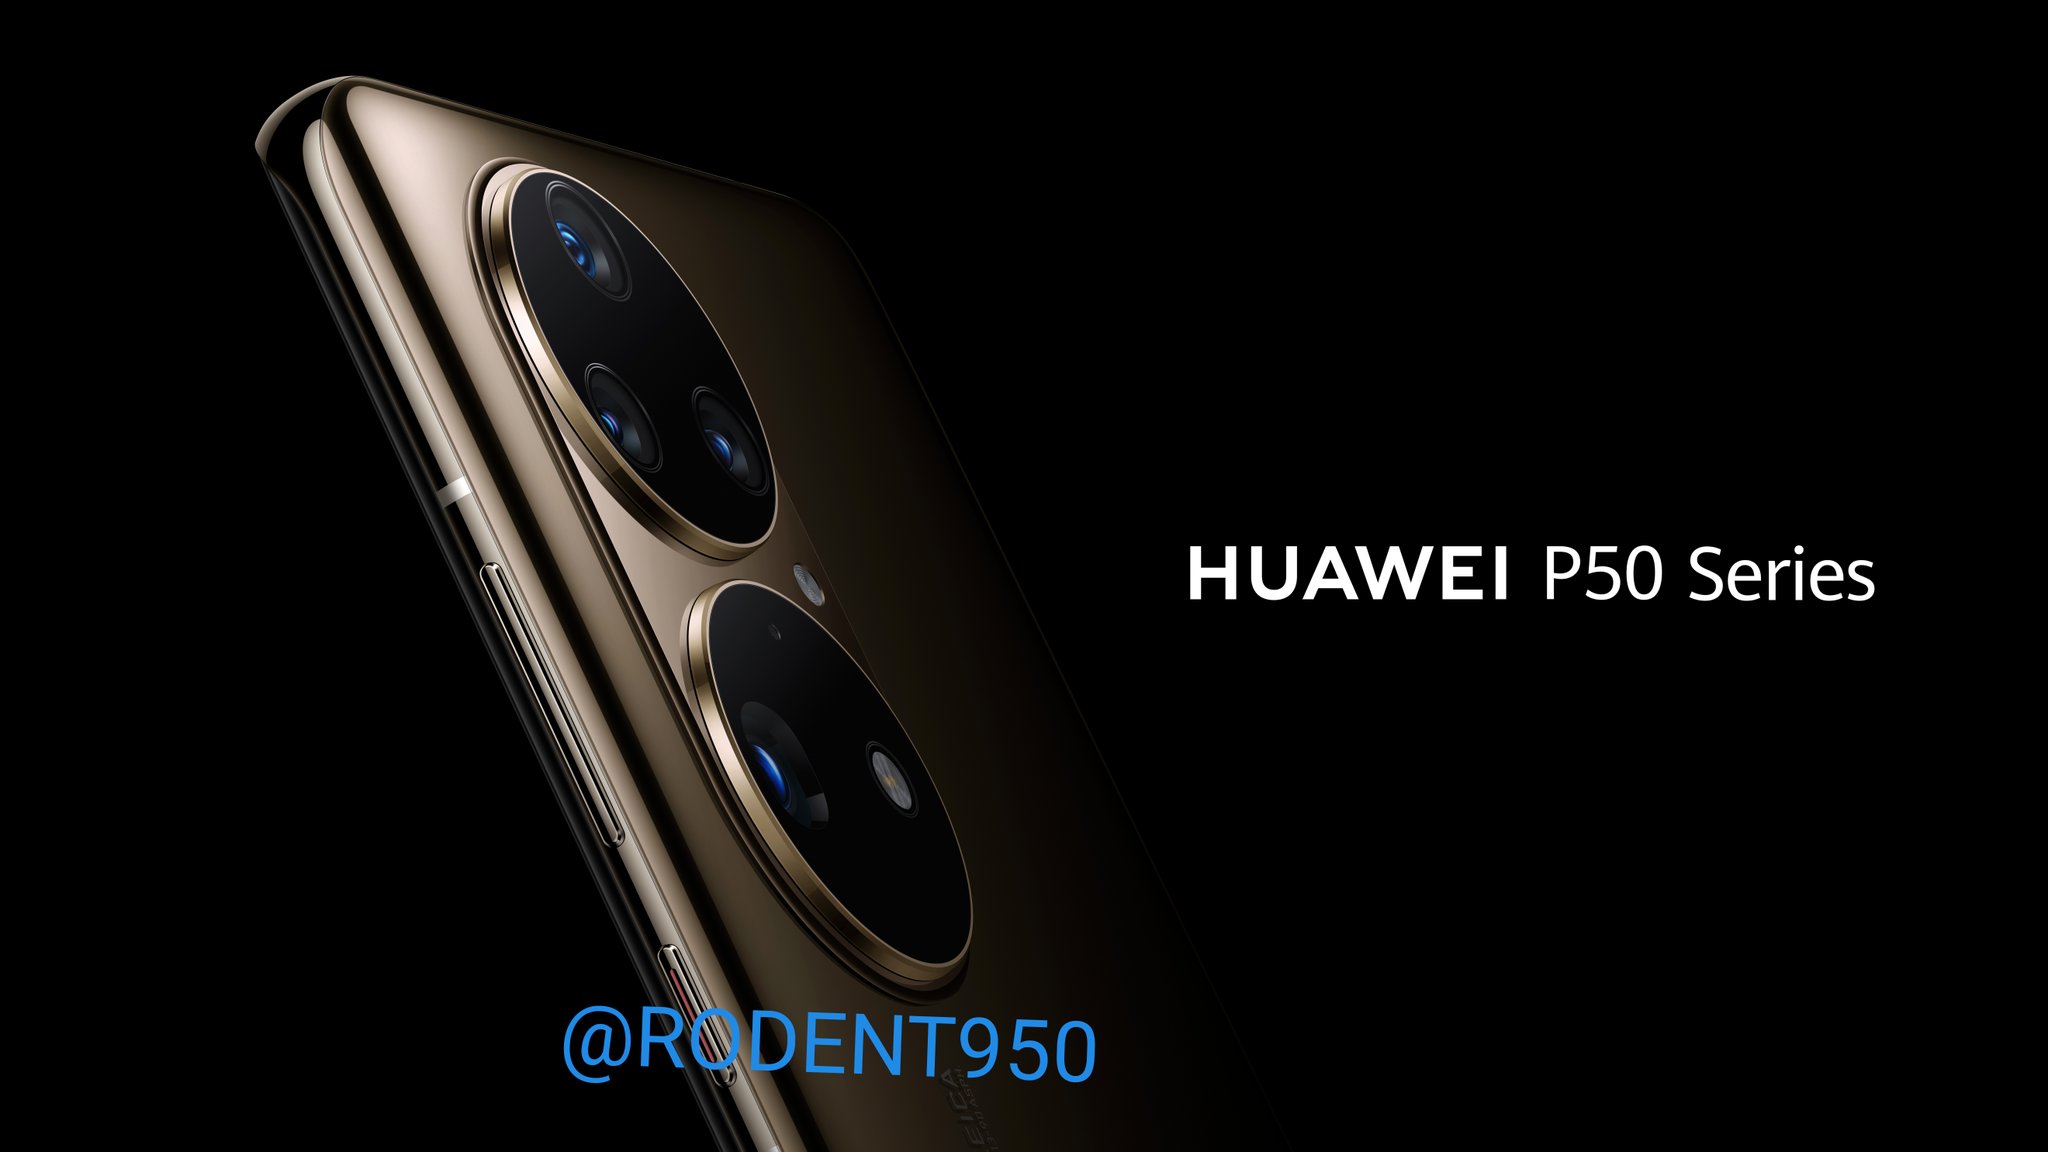 Ein Insider zeigte die offiziellen Presse-Renderings des Huawei P50